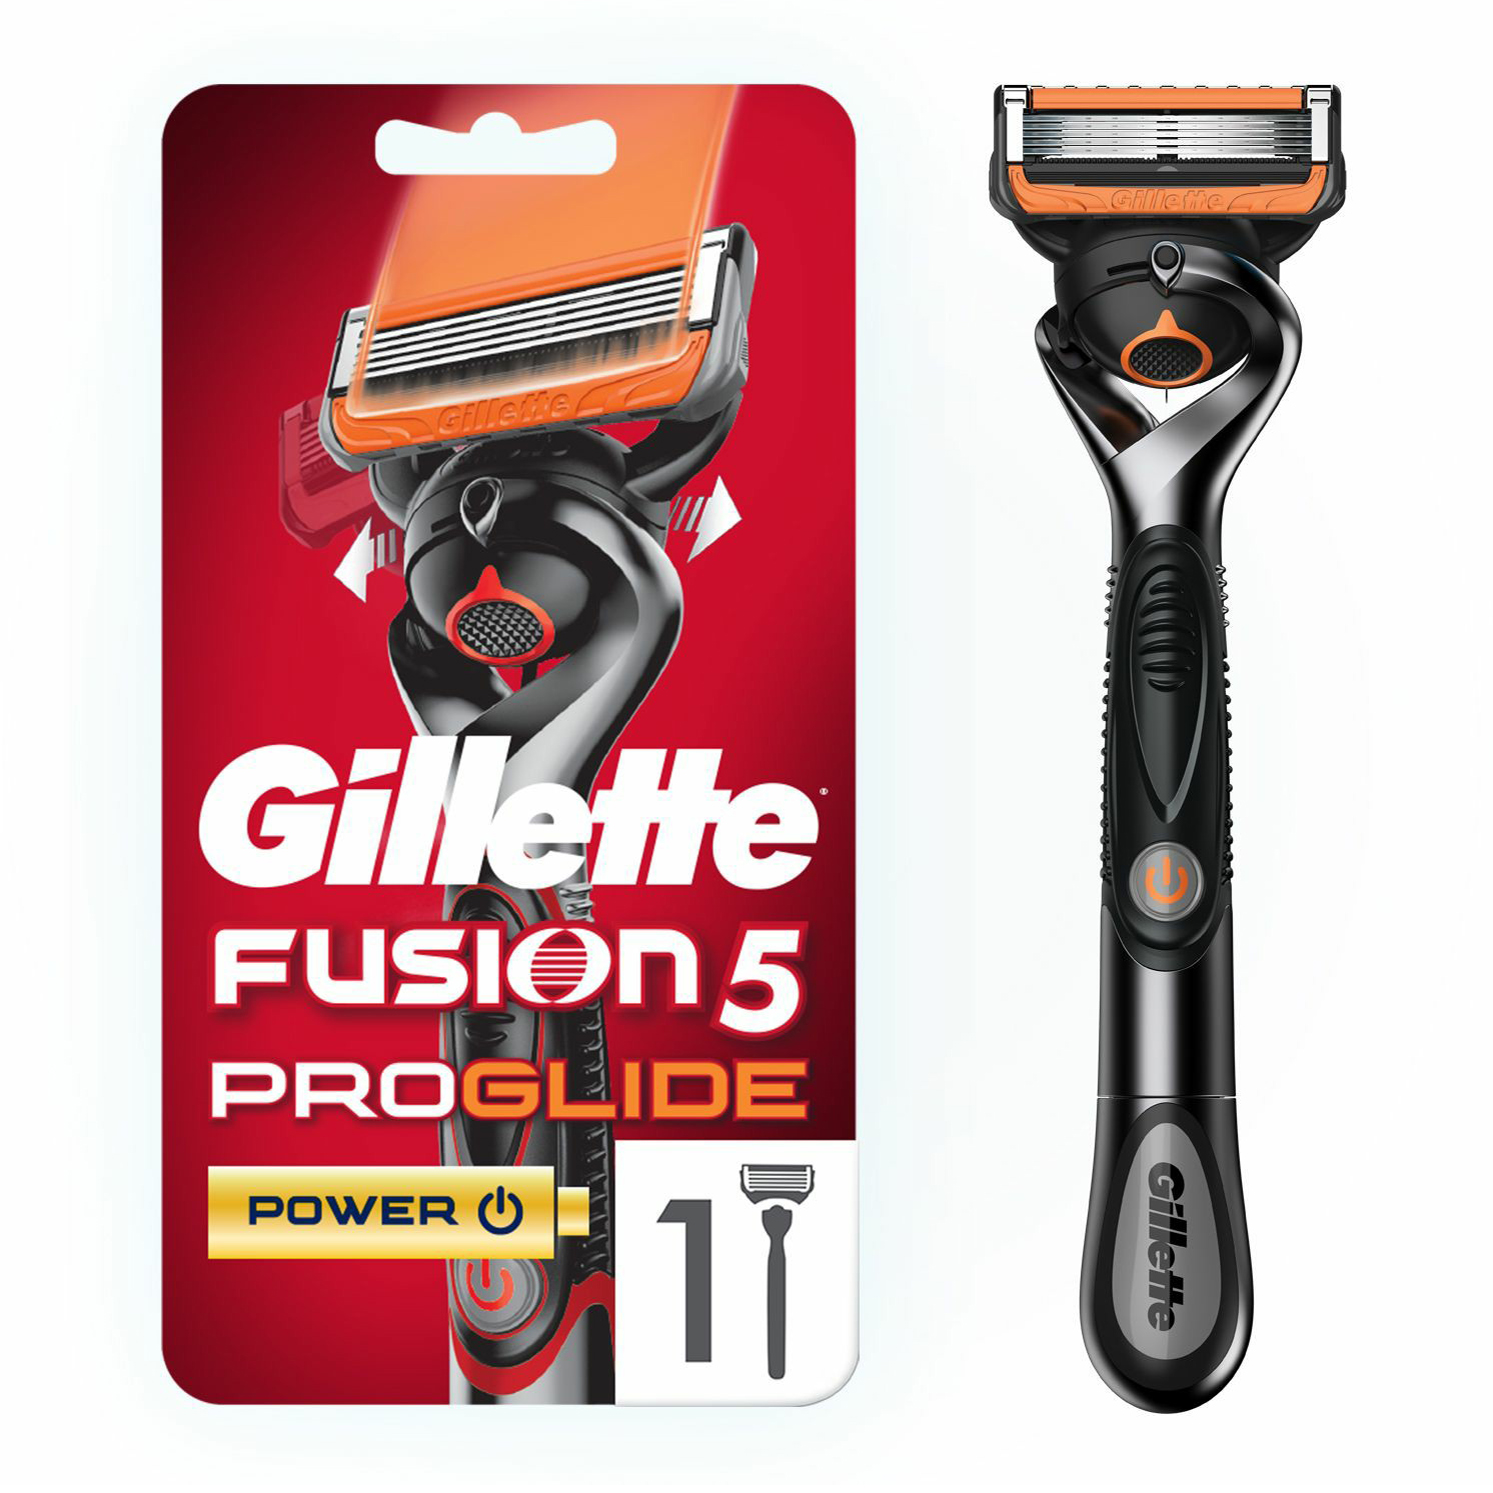 Бритвенный станок со сменной кассетой Gillette Fusion5 ProGlide Power с пятью лезвиями 1шт бритвенный станок gillette fusion 5 proglide power 8 сменных кассет